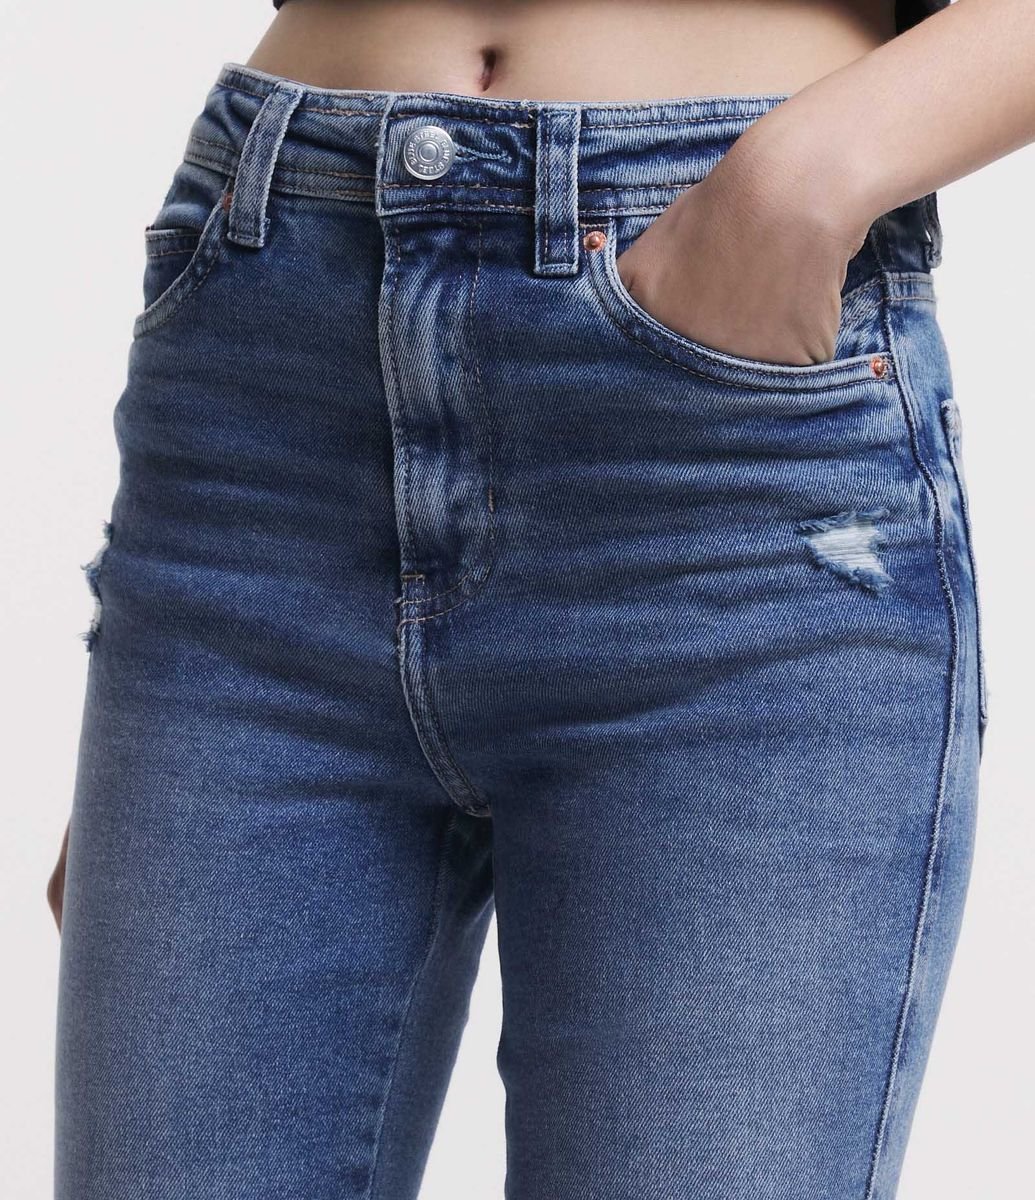 Calça Bootcut Jeans com Bolso Diferenciado Azul Claro